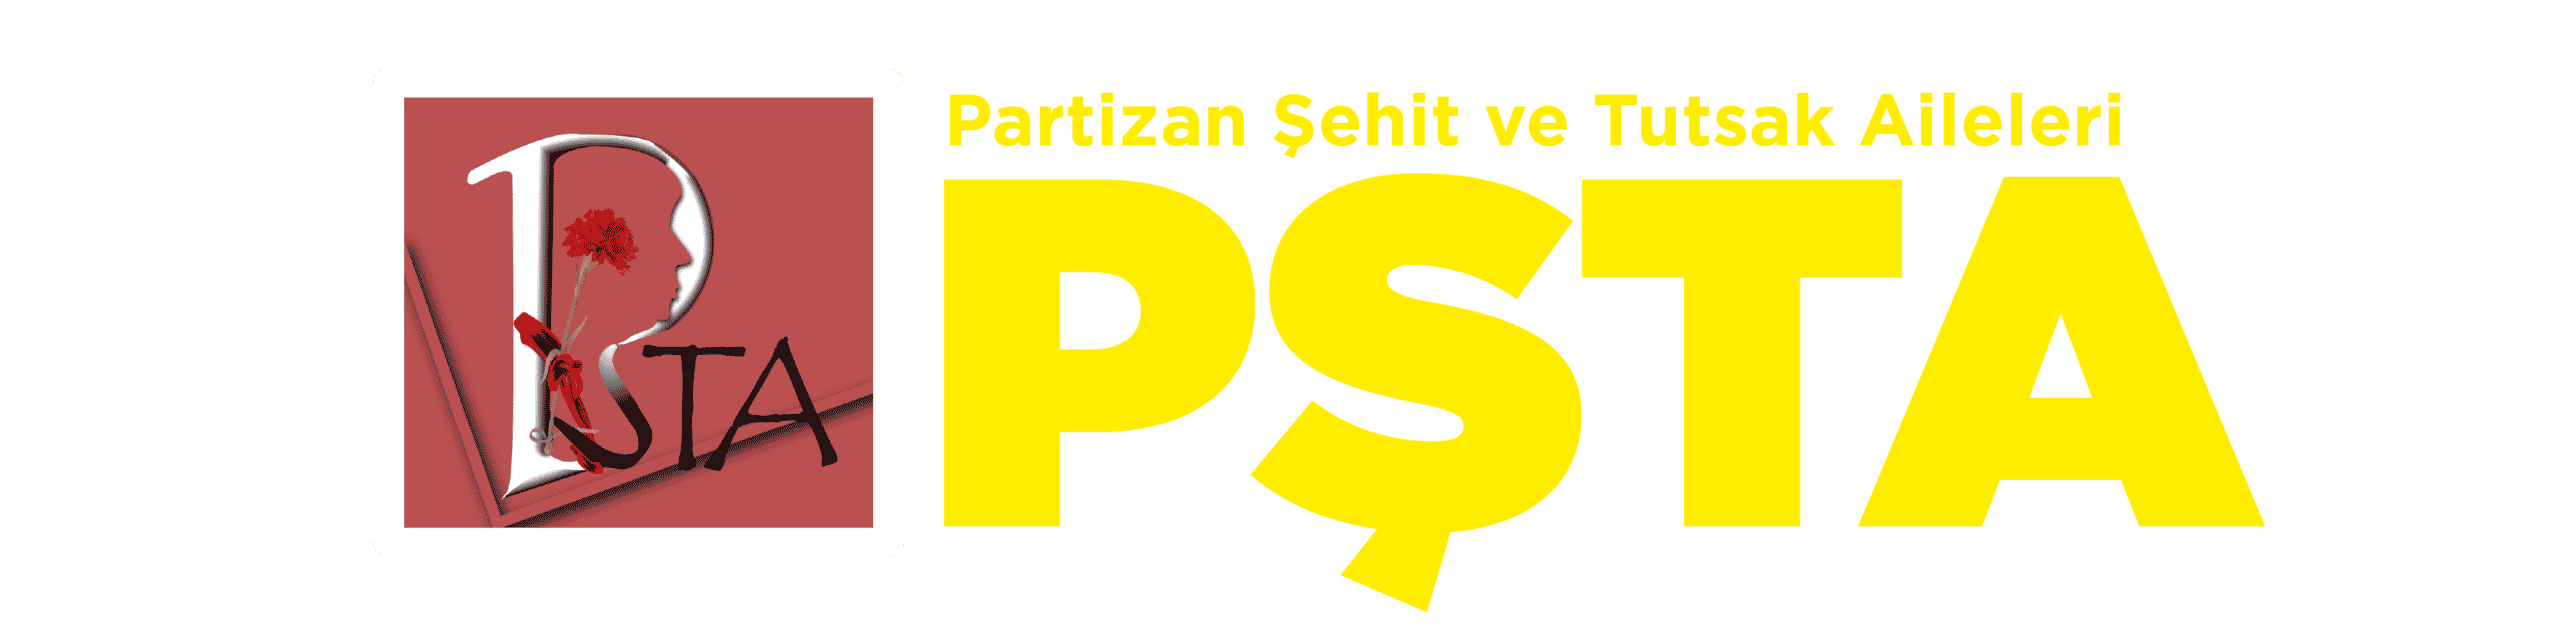 Partizan Şehit ve Tutsak Aileleri